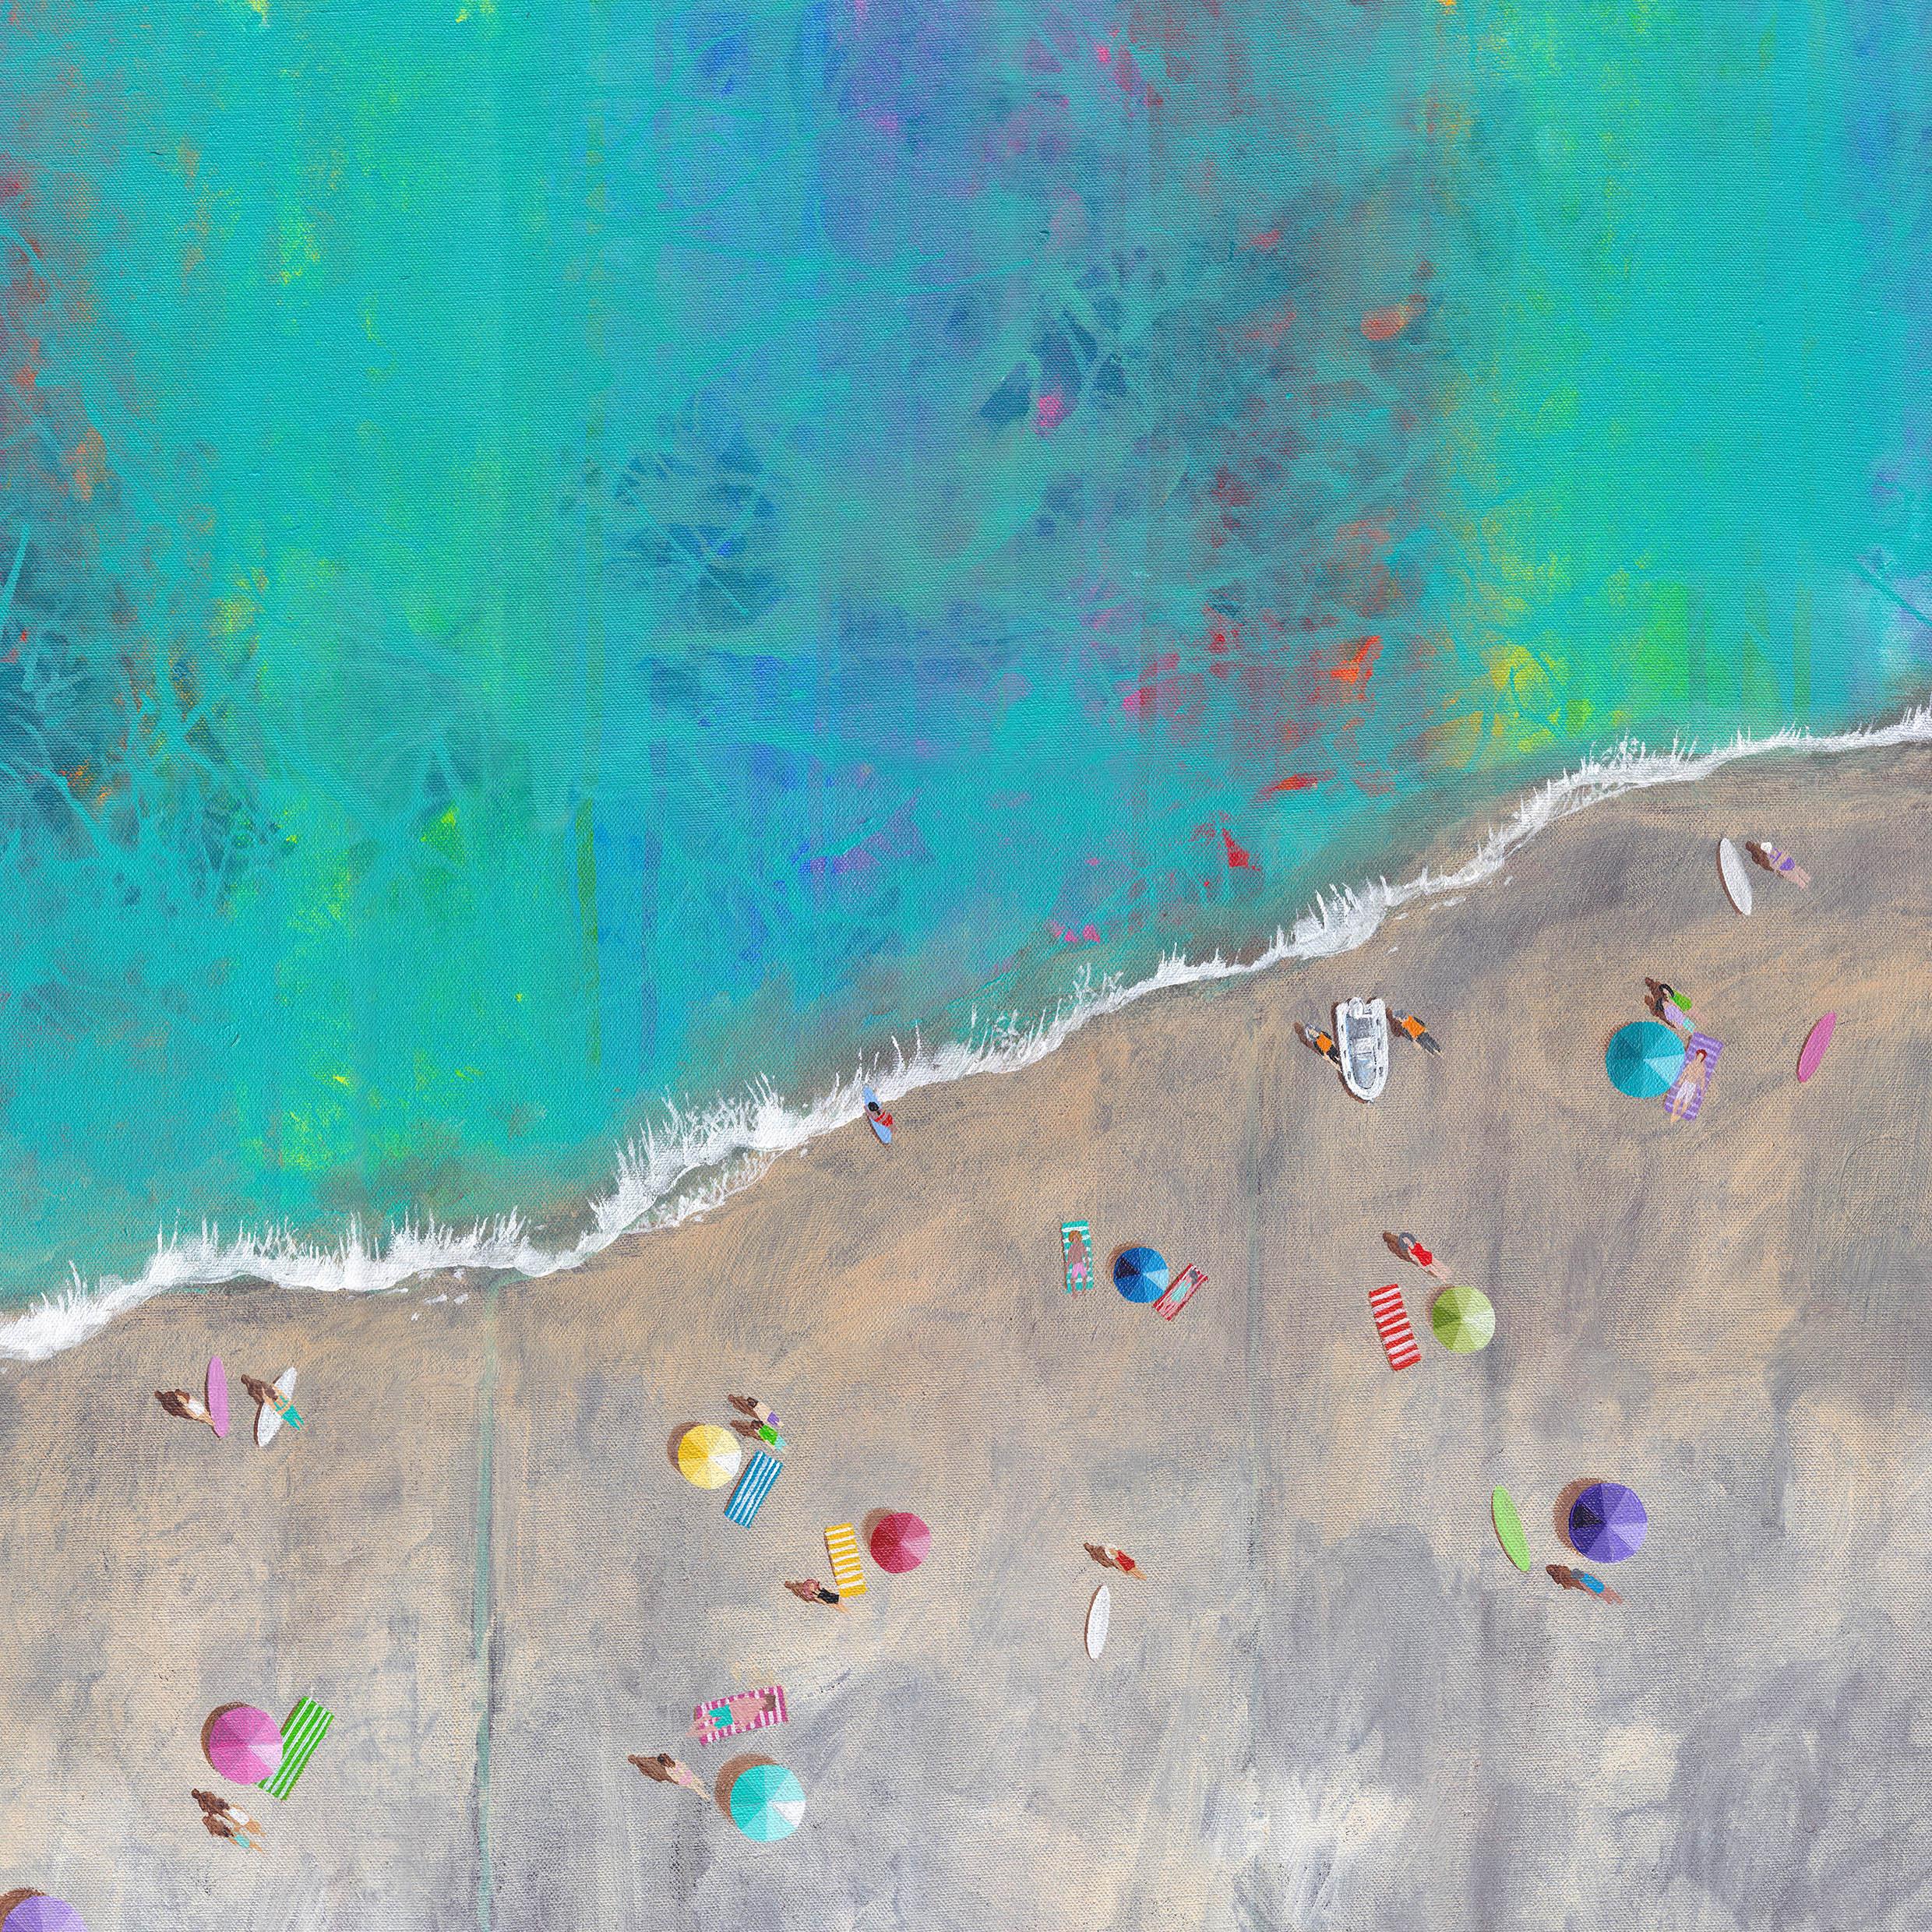 Vagues multicolores-peinture impressionniste originale de paysage marin-art contemporain - Painting de Lenny Cornforth